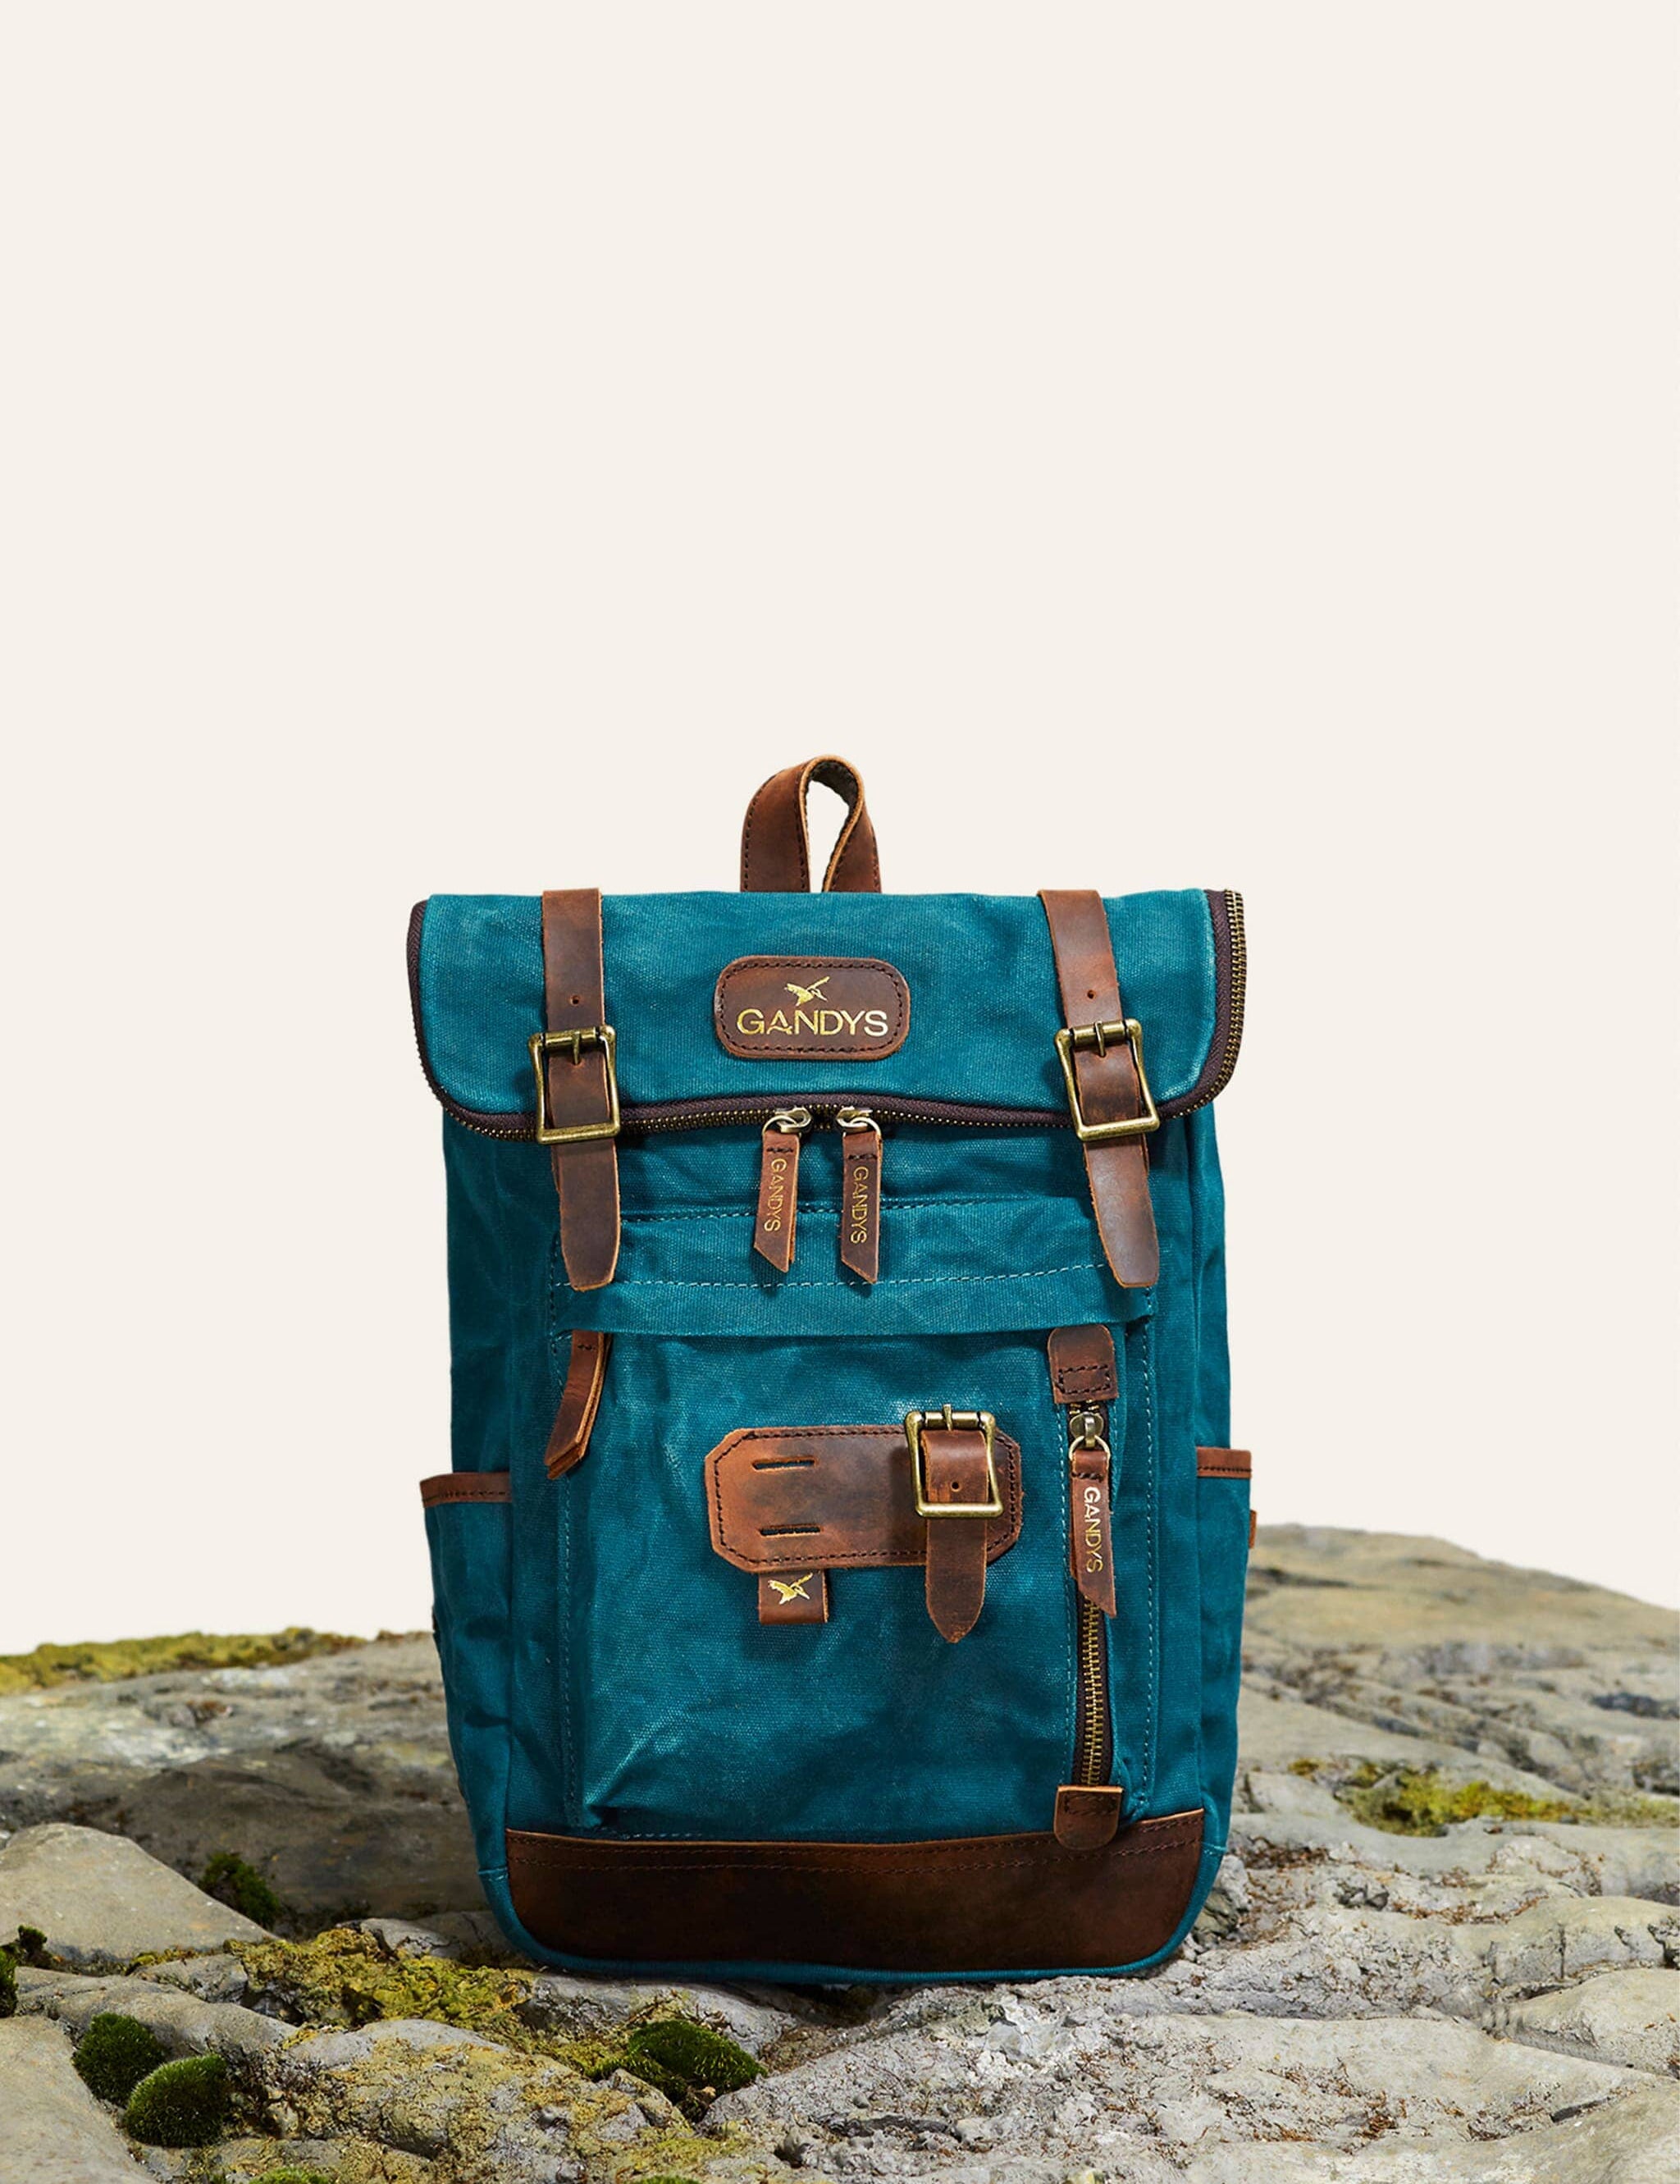 teal-waxed-authentic-mini-bali-backpack-419453.jpg